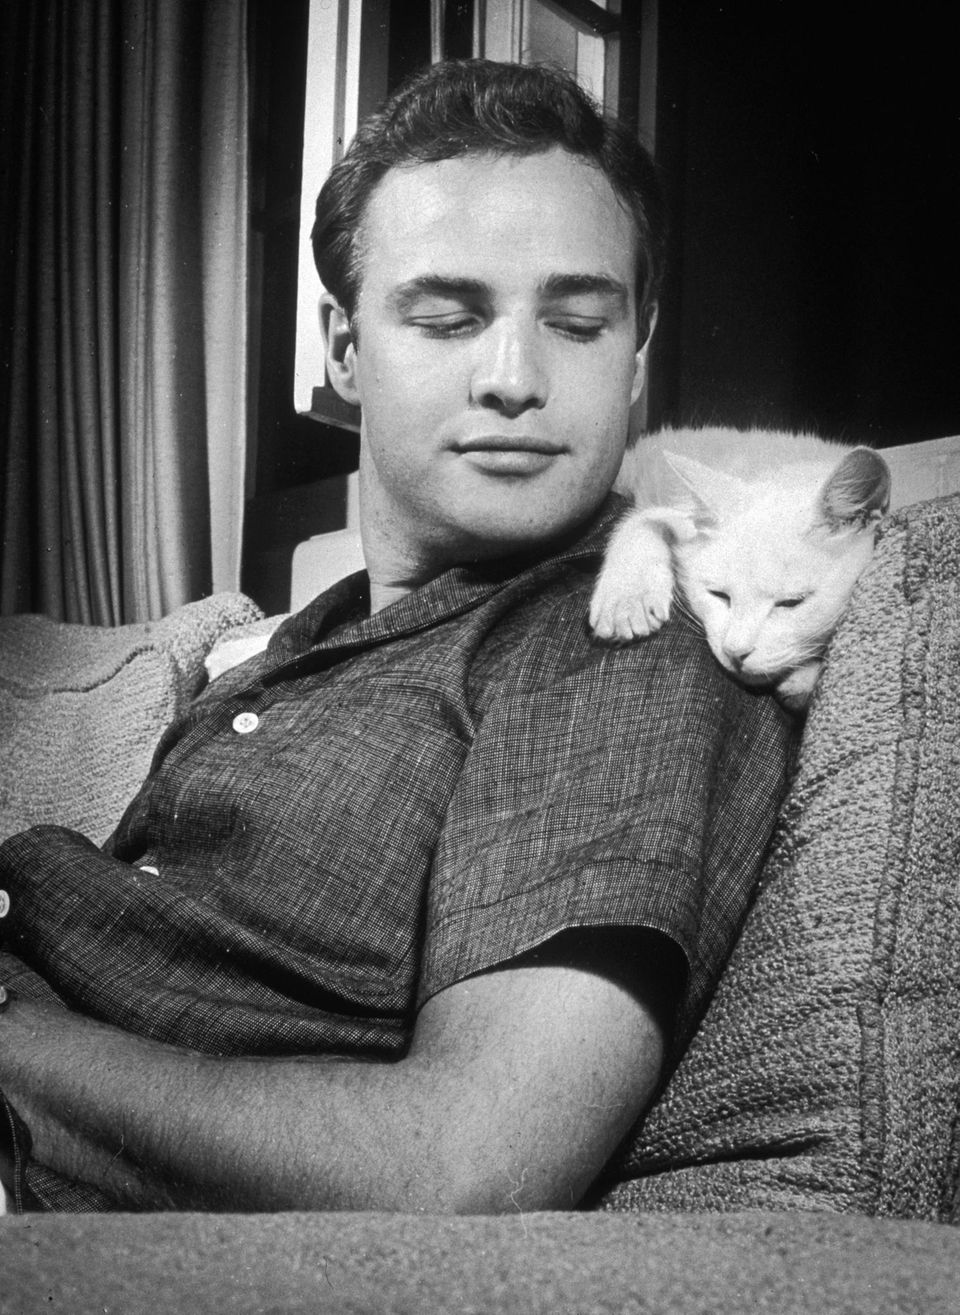 Dösen auf der Schulter von Marlon Brando; aufgenommen 1954 in der Villa des Schauspielers in Los Angeles.